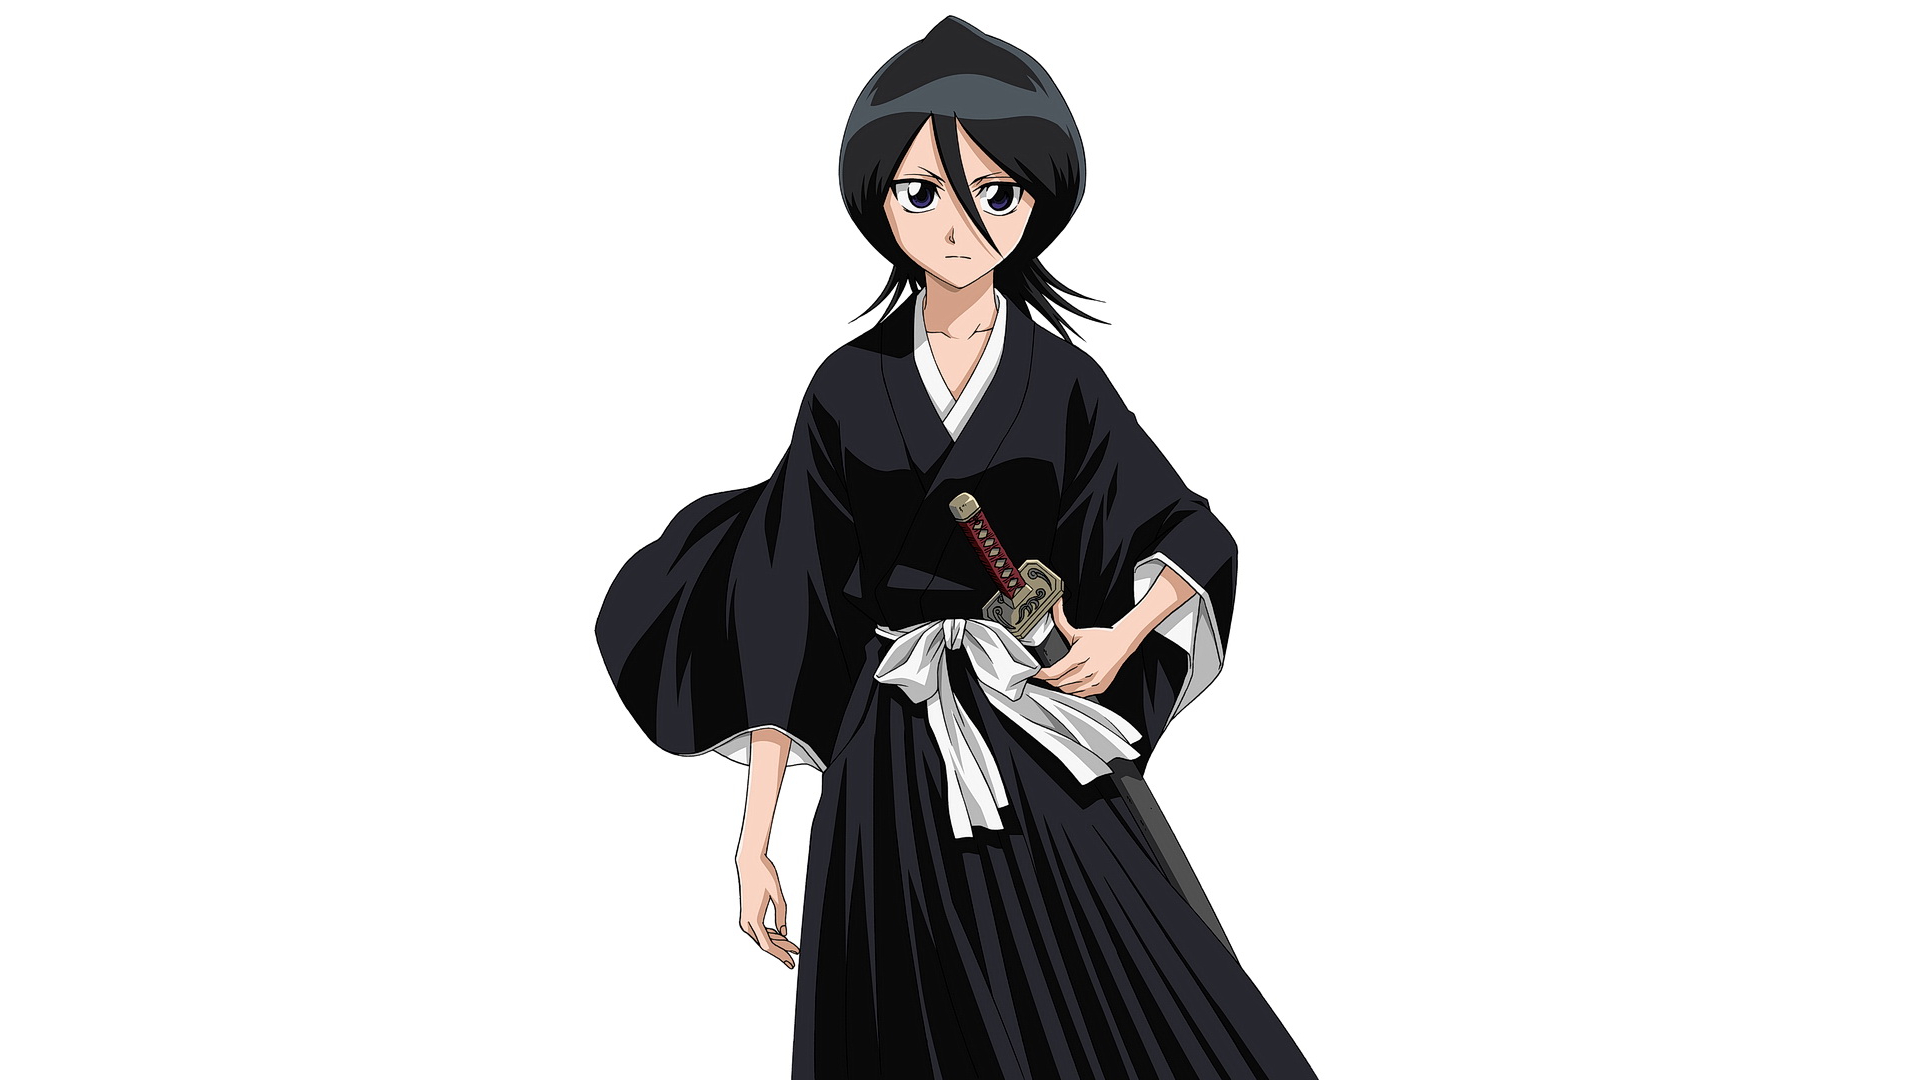 Аниме герой Rukia Kuchiki с мечом стоит на белом фоне